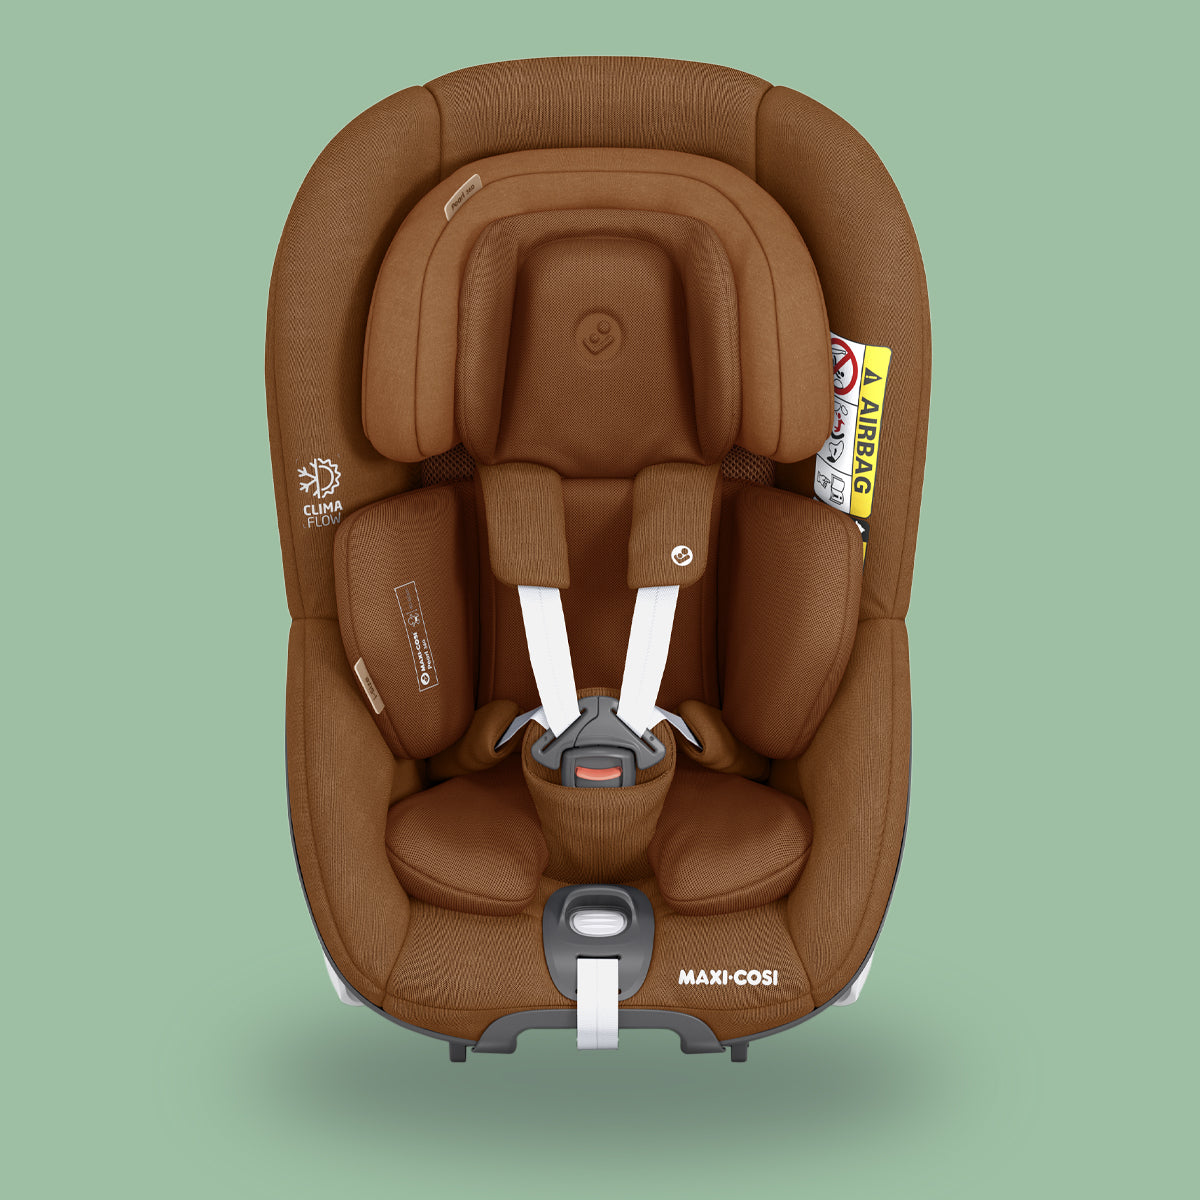 A Maxi-Cosi Pearl 360 rotating car seat in brown.